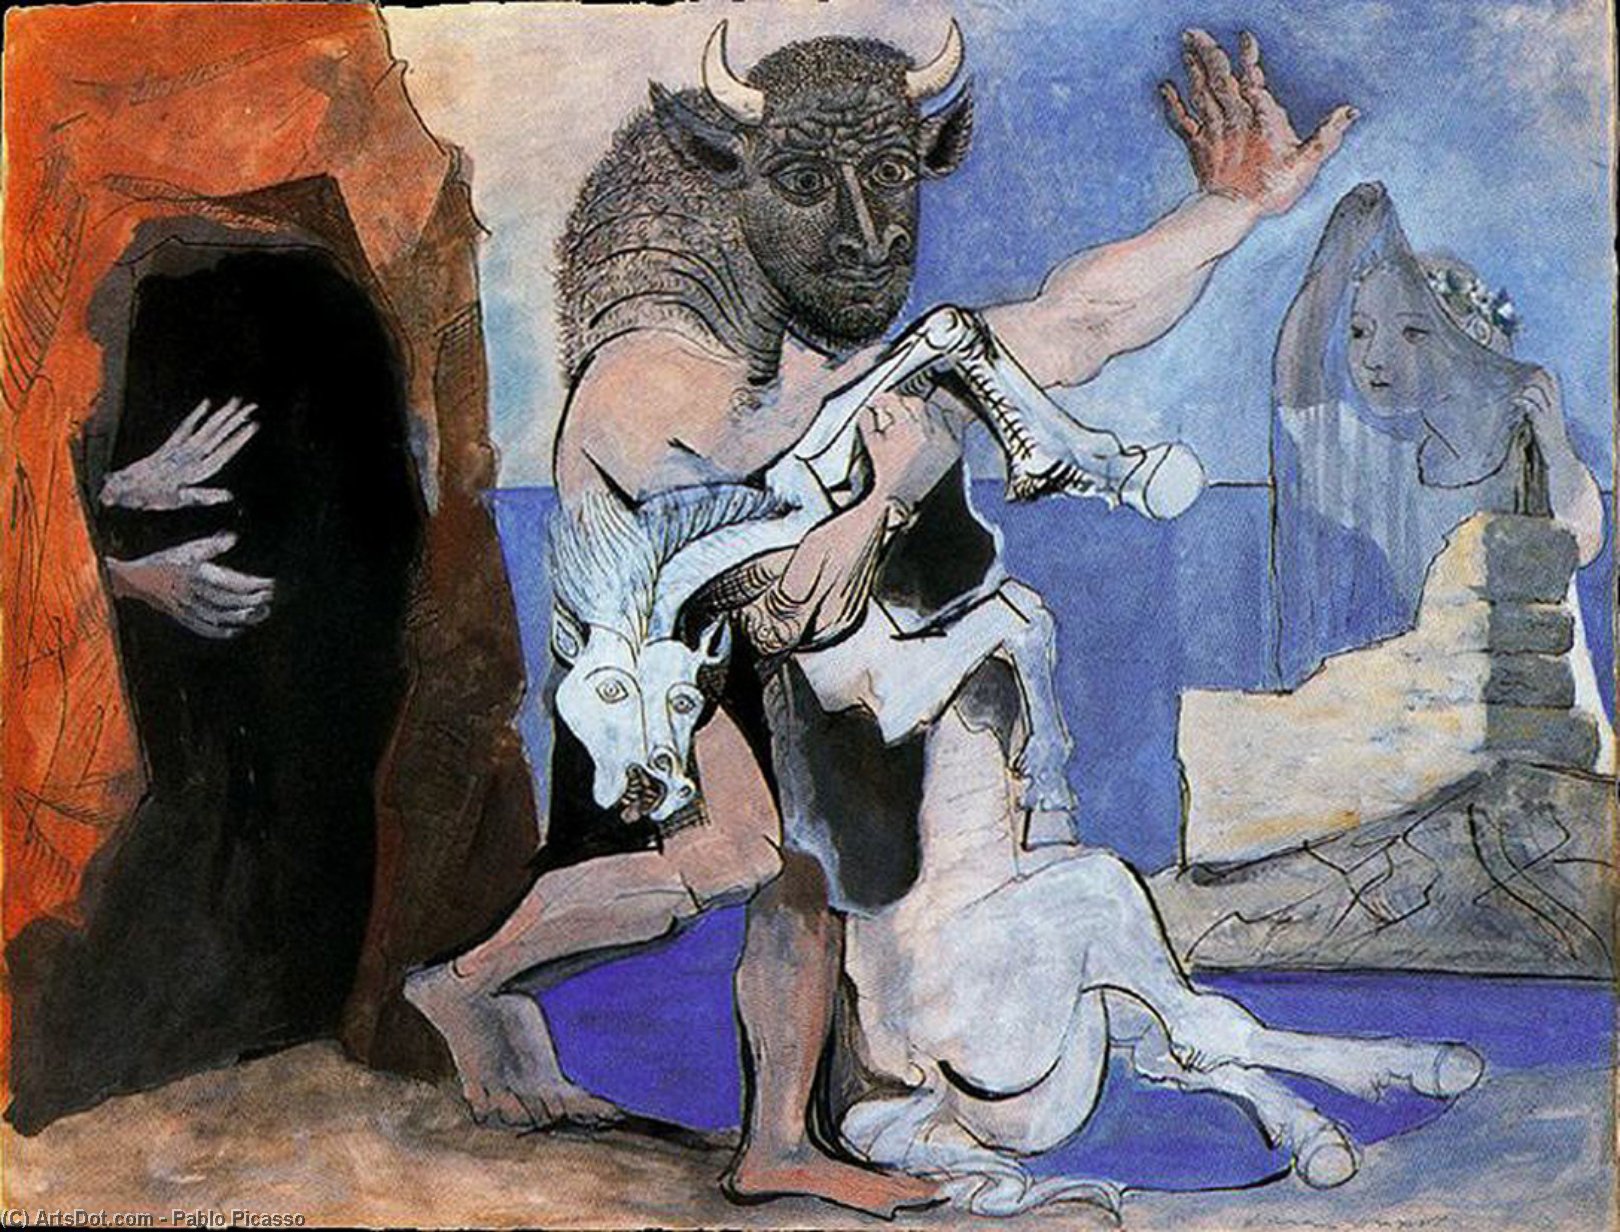 WikiOO.org - Encyclopedia of Fine Arts - Festés, Grafika Pablo Picasso - Minotauro y yegua muerta delante de una gruta y niña con velo